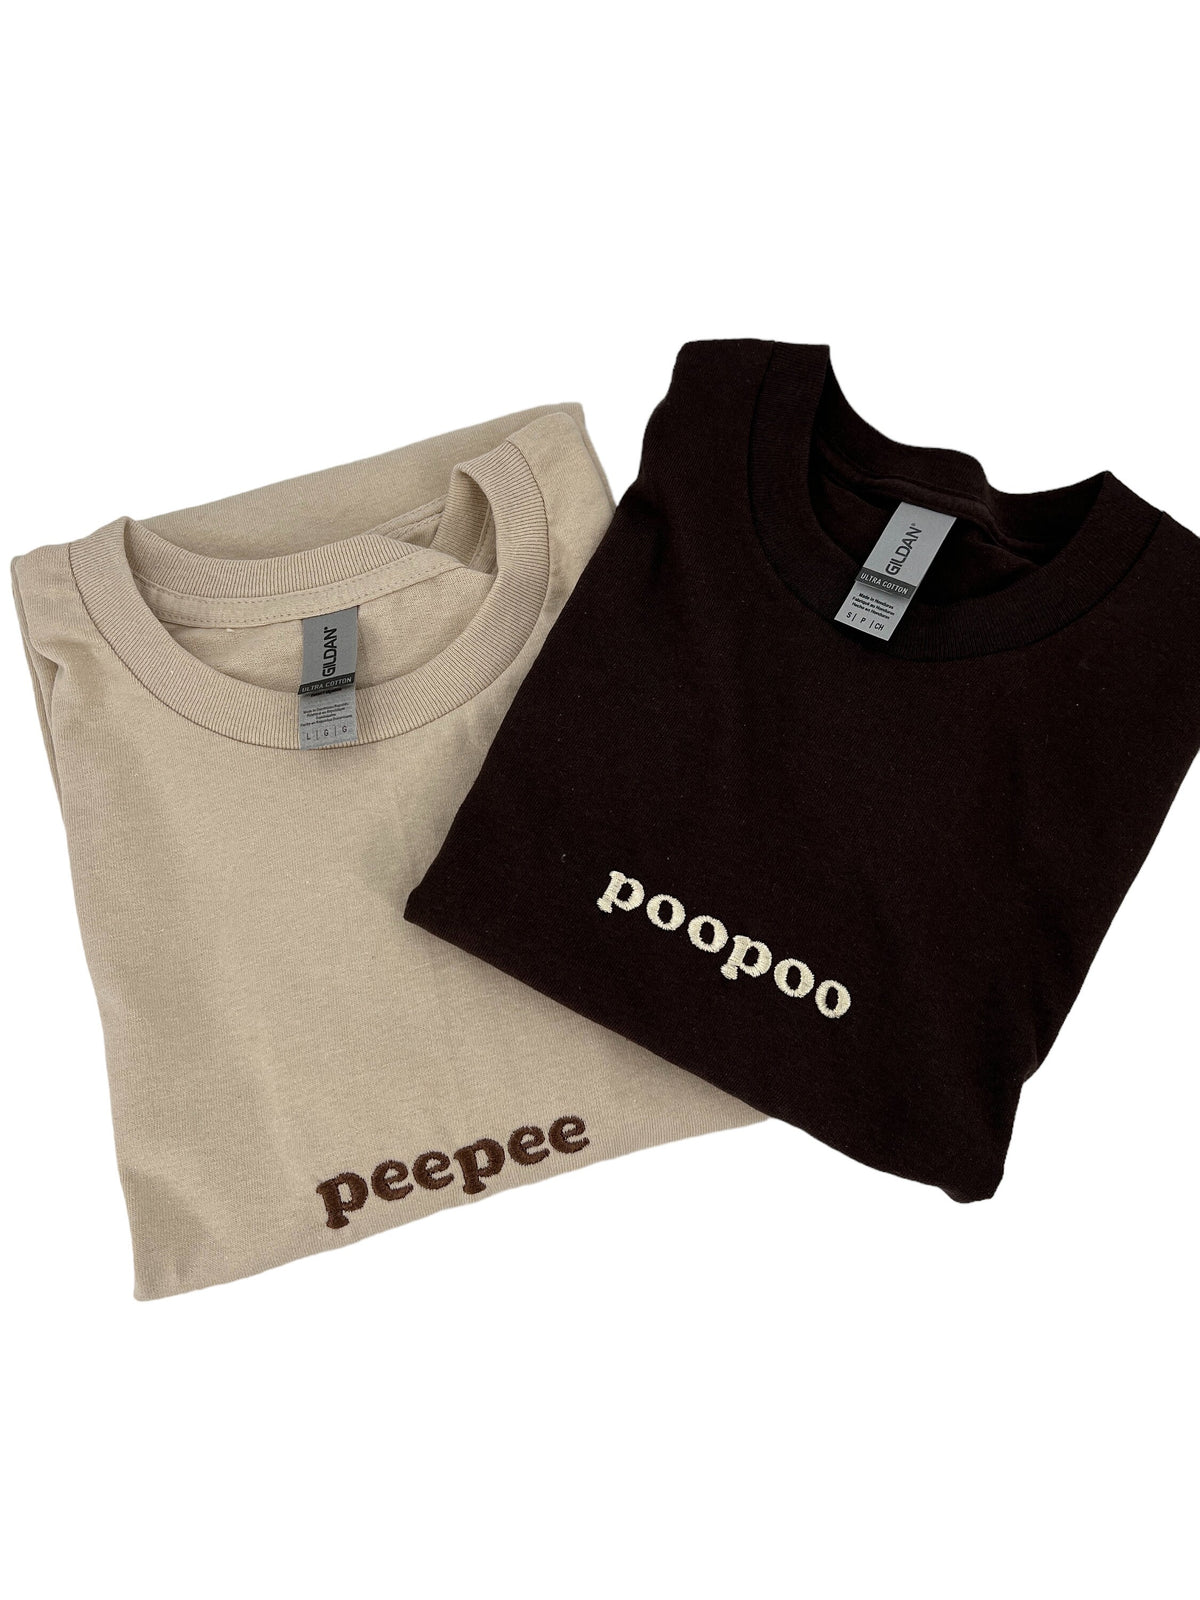 Peepee Poopoo Matching Tee Set